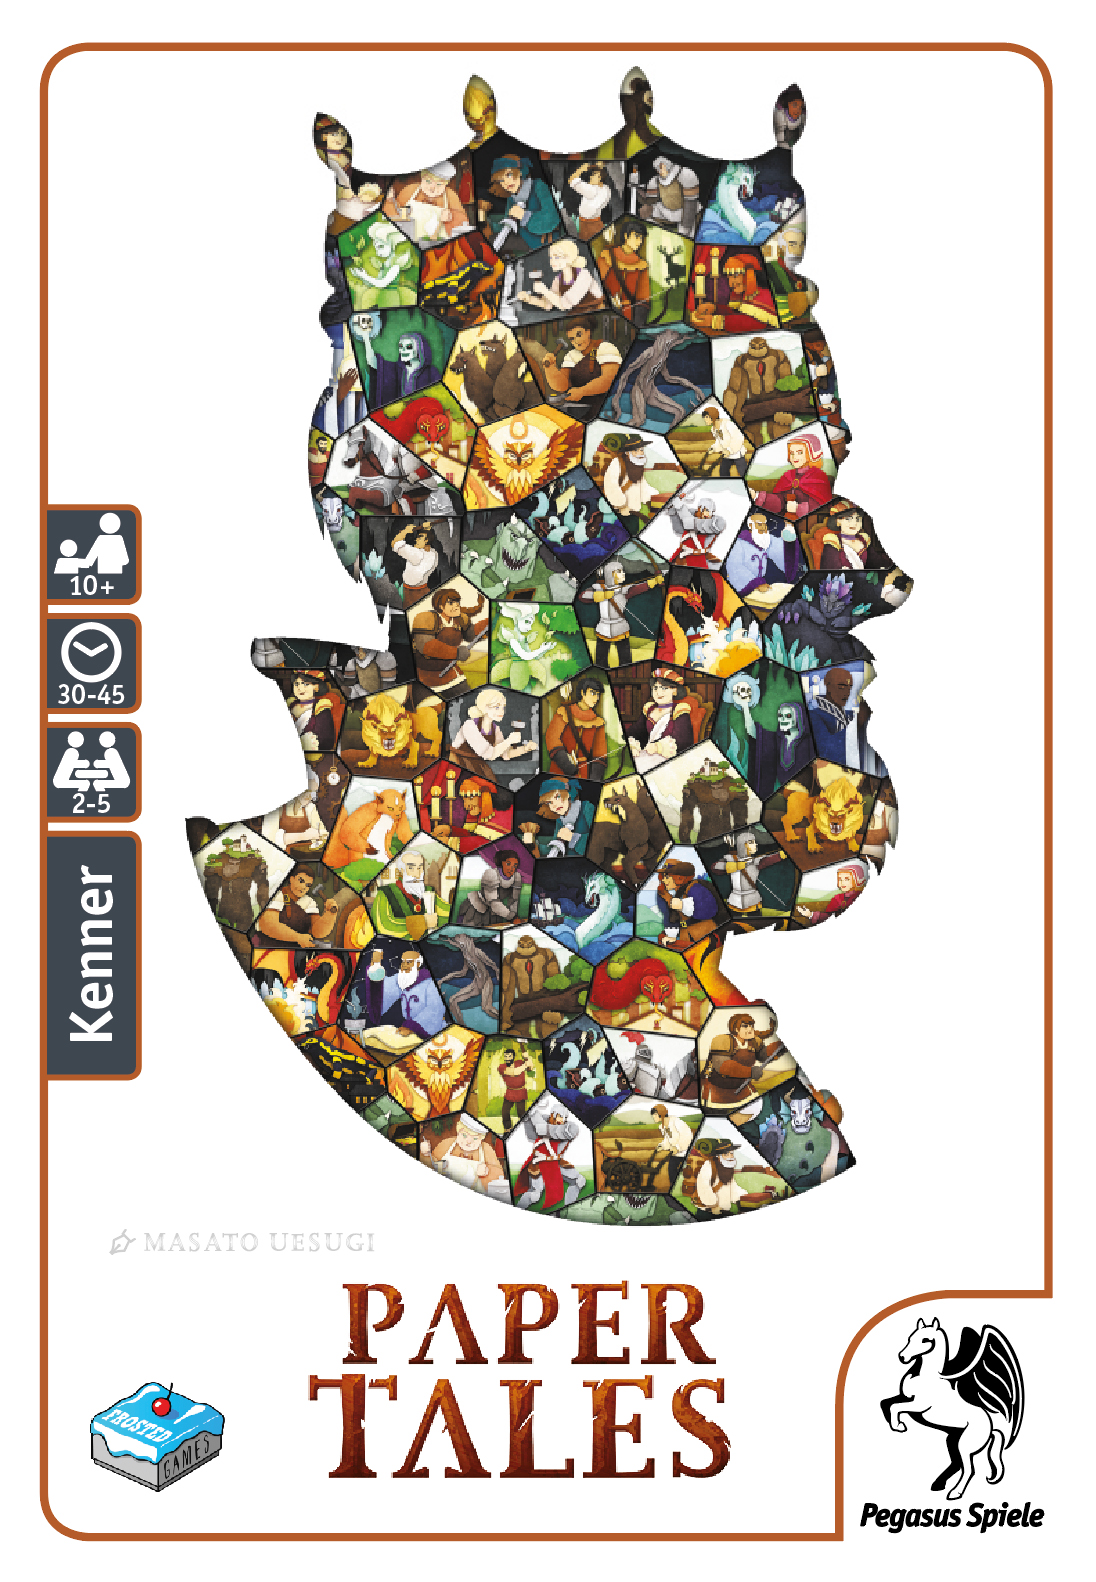 Paper Tales ist ein flottes Kennerspiel für 2 bis 5 Spieler ab 10 Jahren, das Dank der simultanen Spielzüge und wenigen Runden in nur 30 bis 45 Minuten gespielt werden kann – unabhängig von der Spielerzahl. Das Spiel soll trotzdem Spannung bieten und optisch an ein Märchenbuch erinnern.